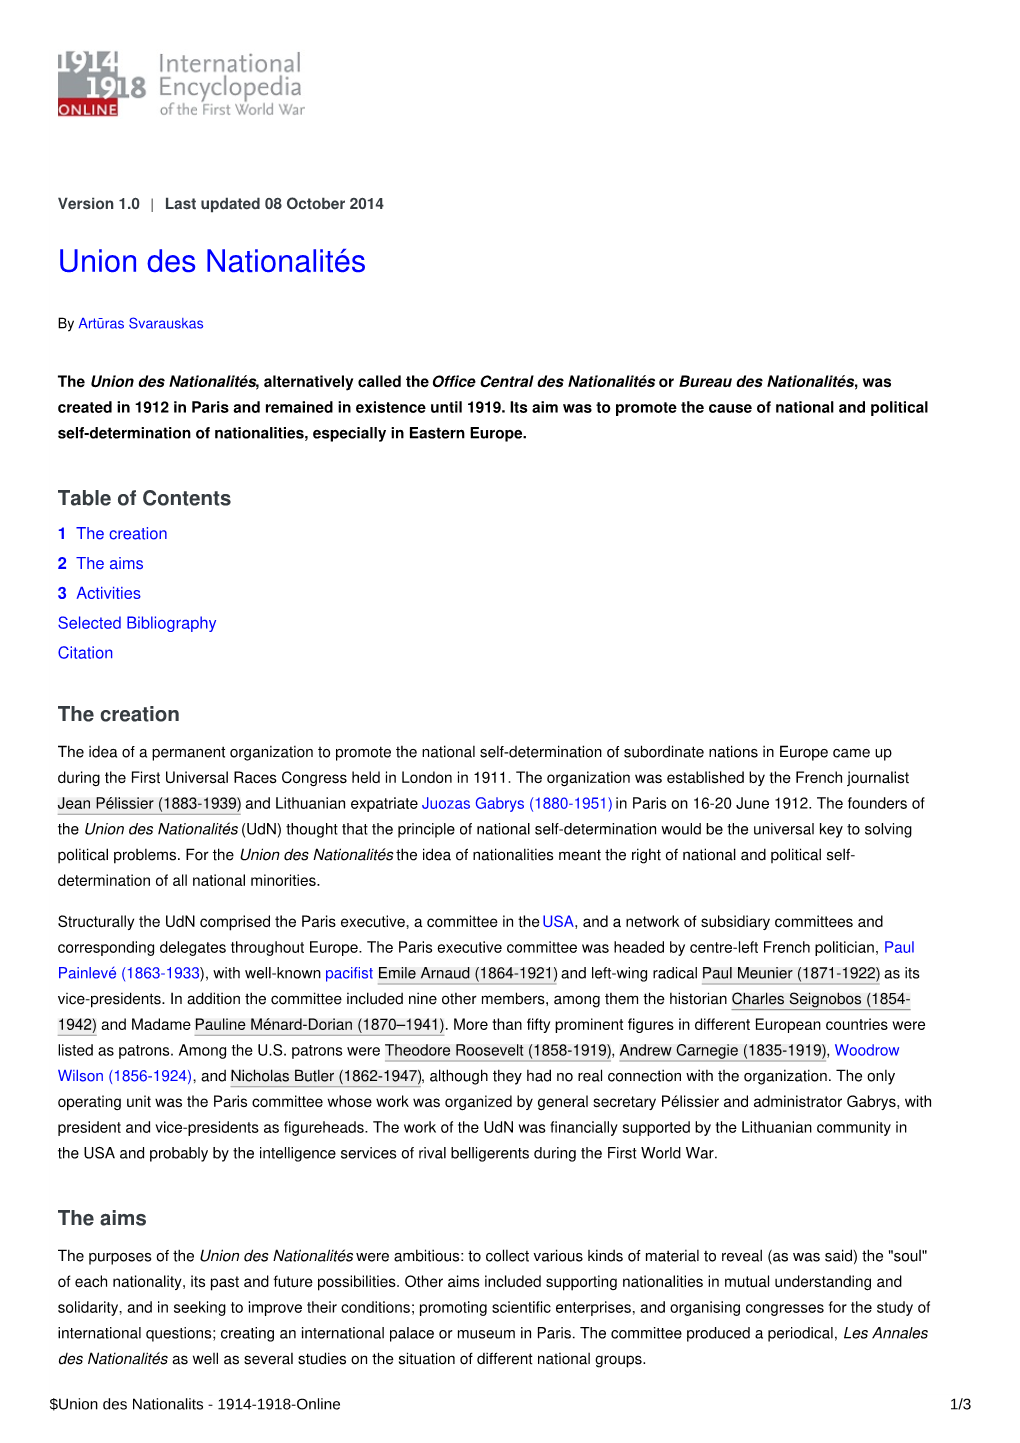 Union Des Nationalités